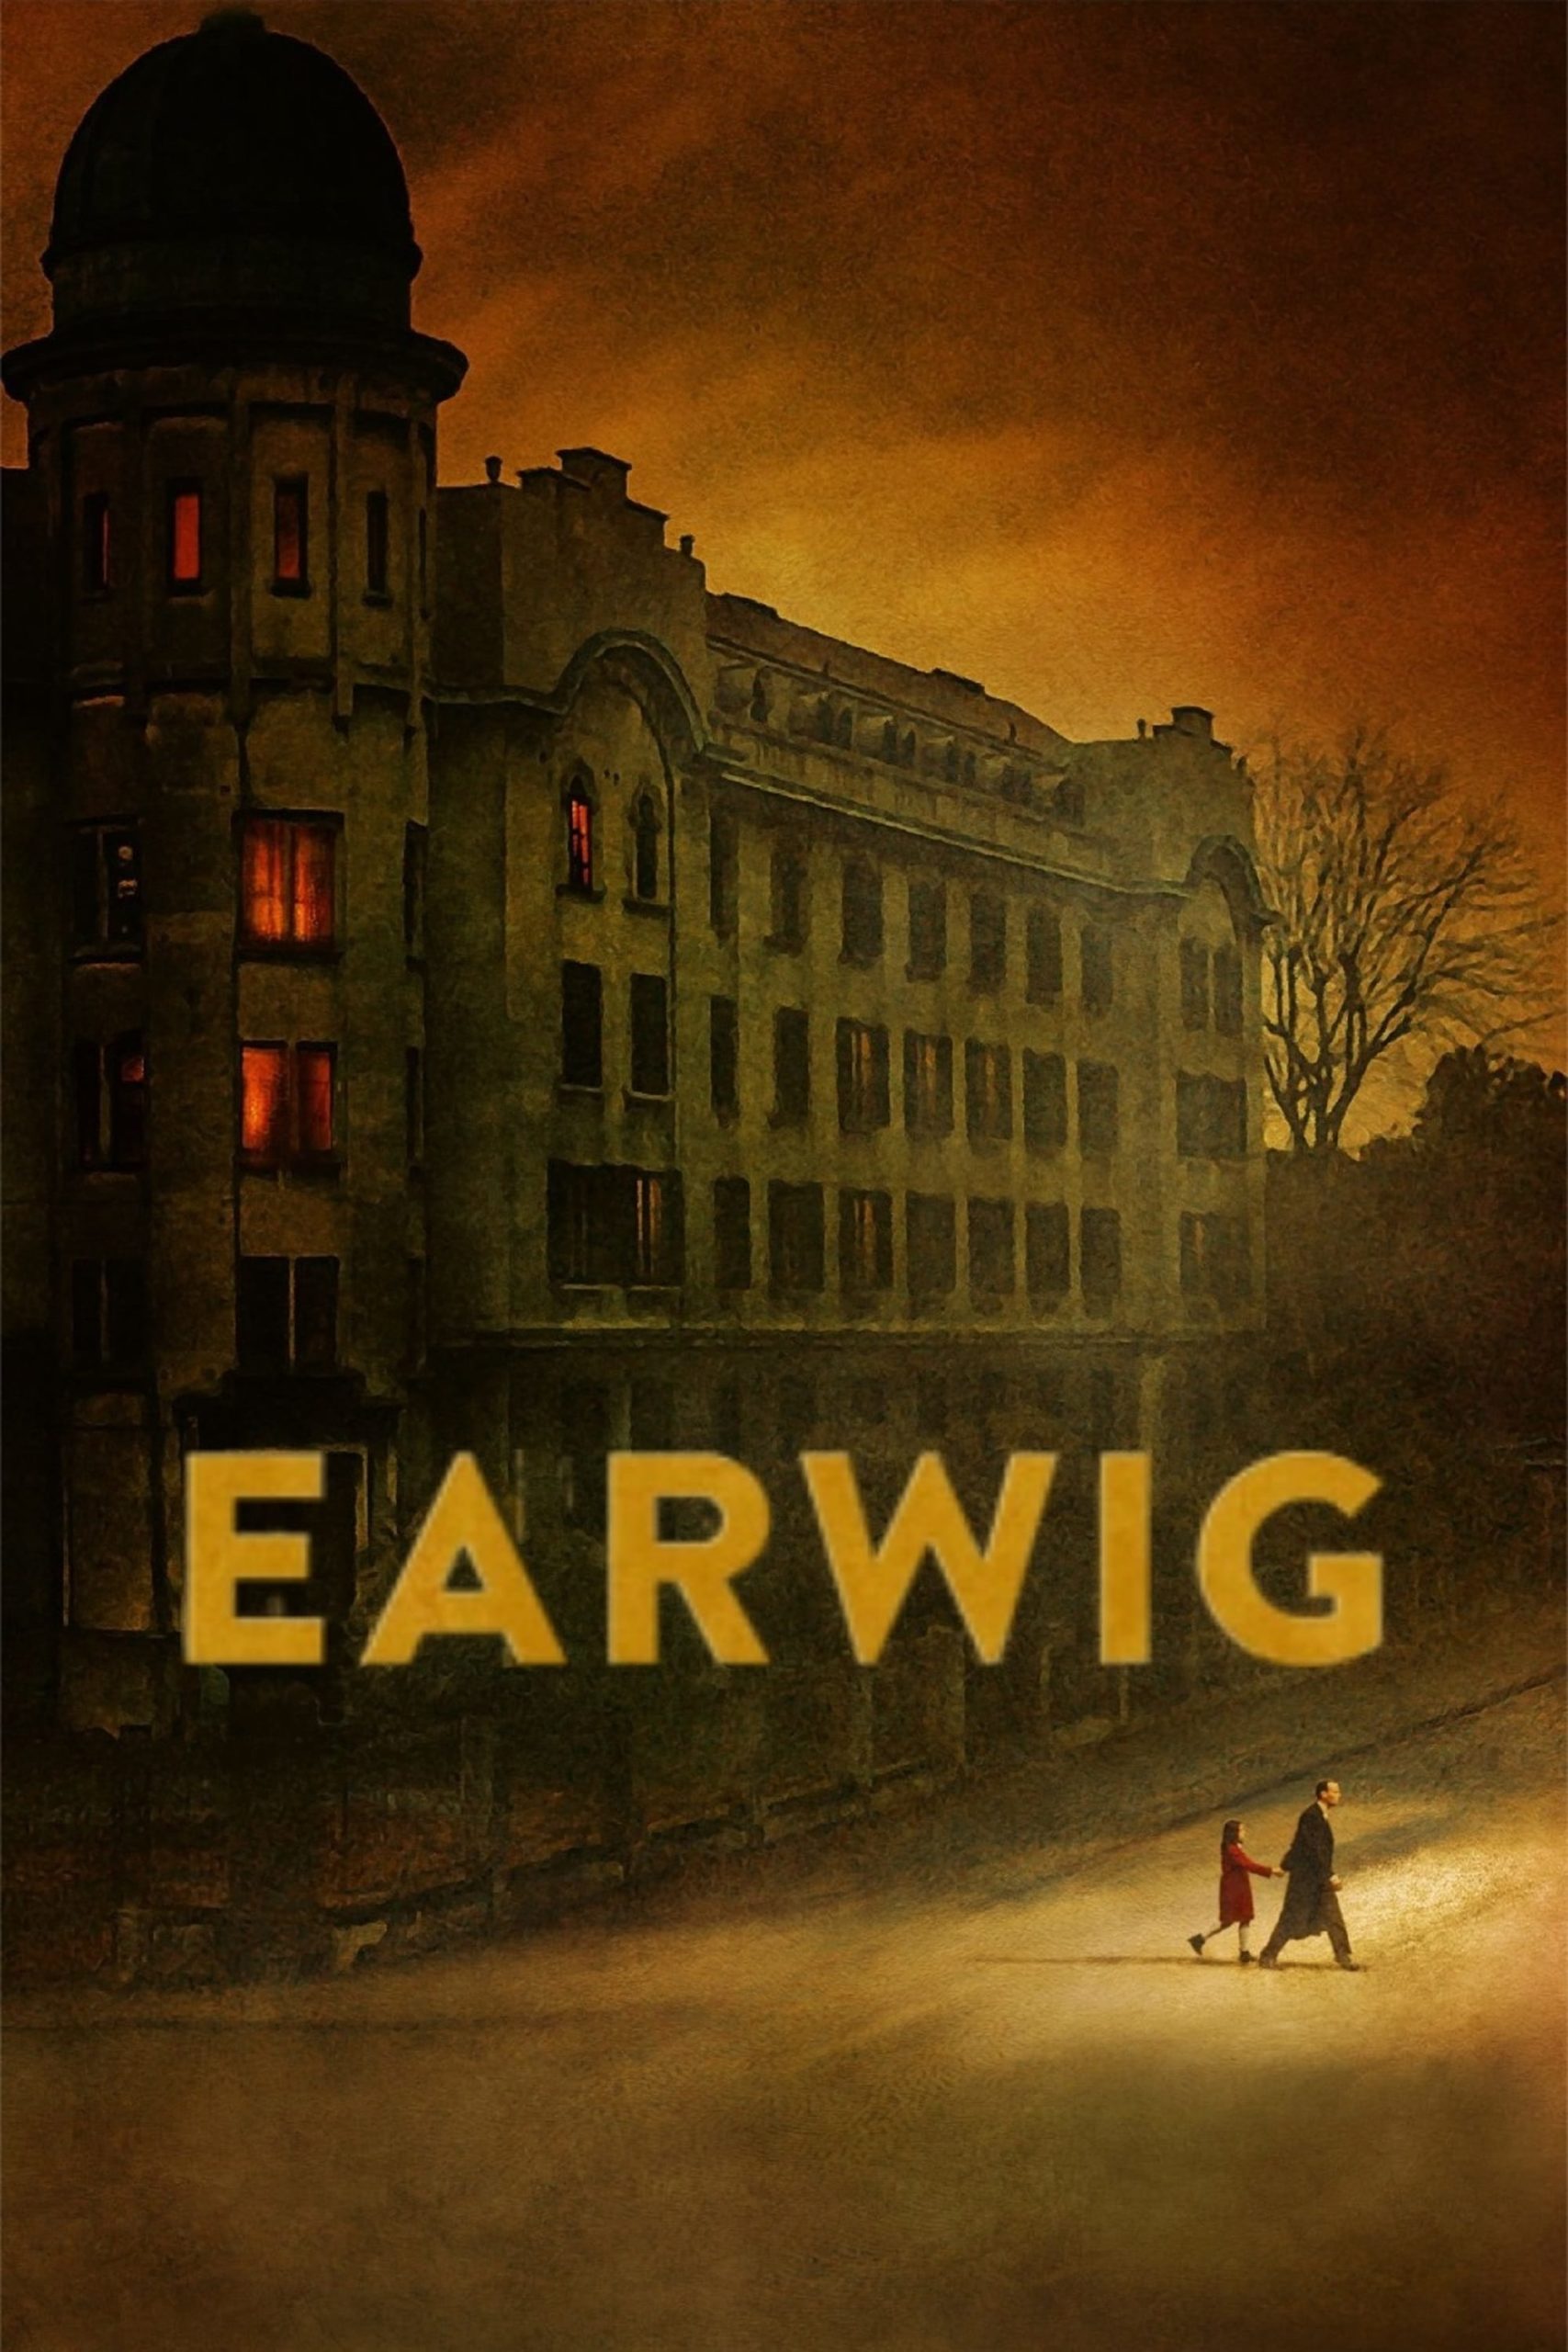 Affiche du film "Earwig"